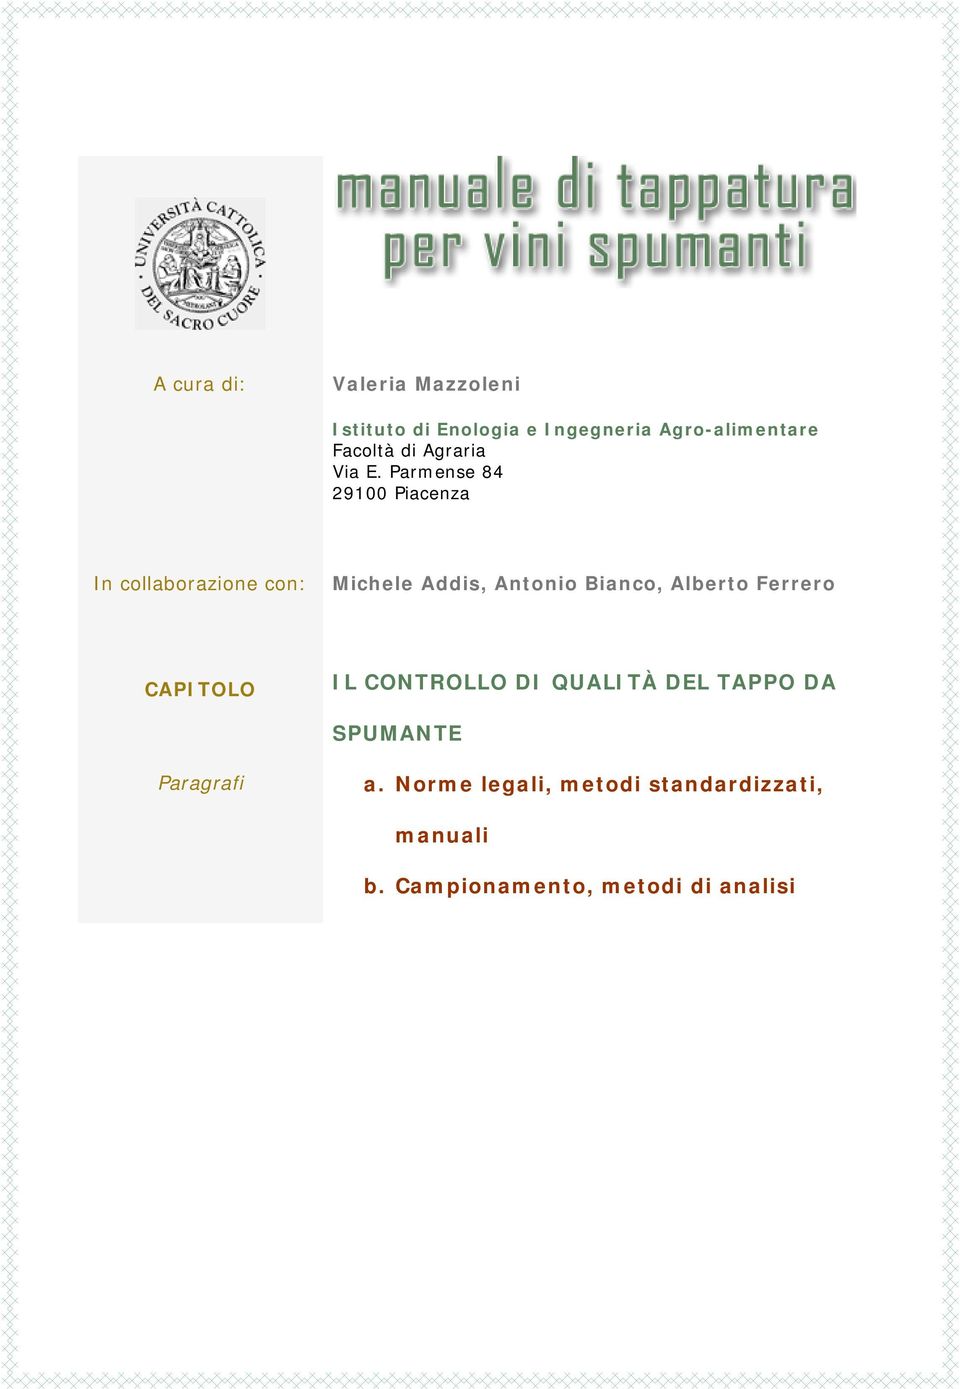 Parmense 84 29100 Piacenza In collaborazione con: Michele Addis, Antonio Bianco,